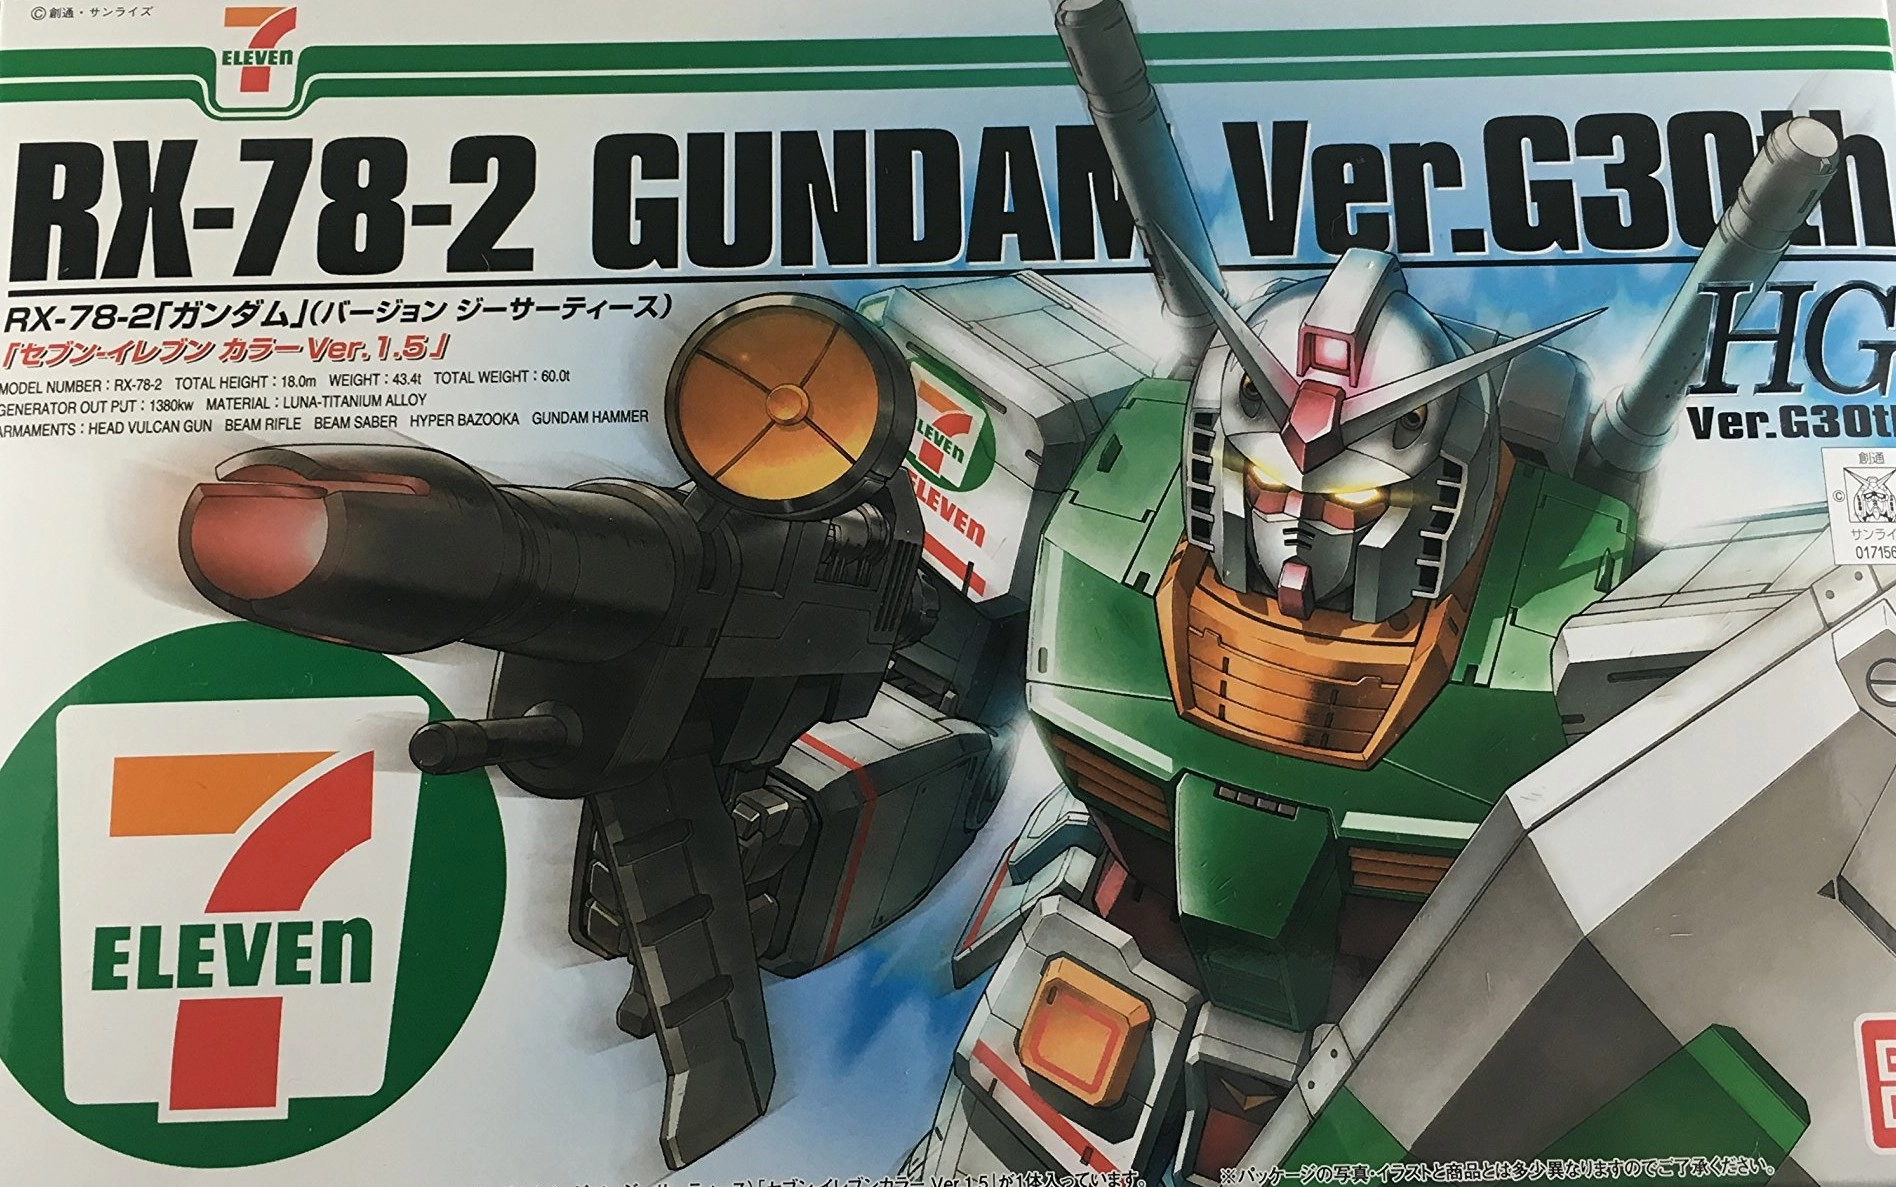 ふるいちオンライン - HGUC 1/144 RX-78-2 ガンダム Ver.G30th 